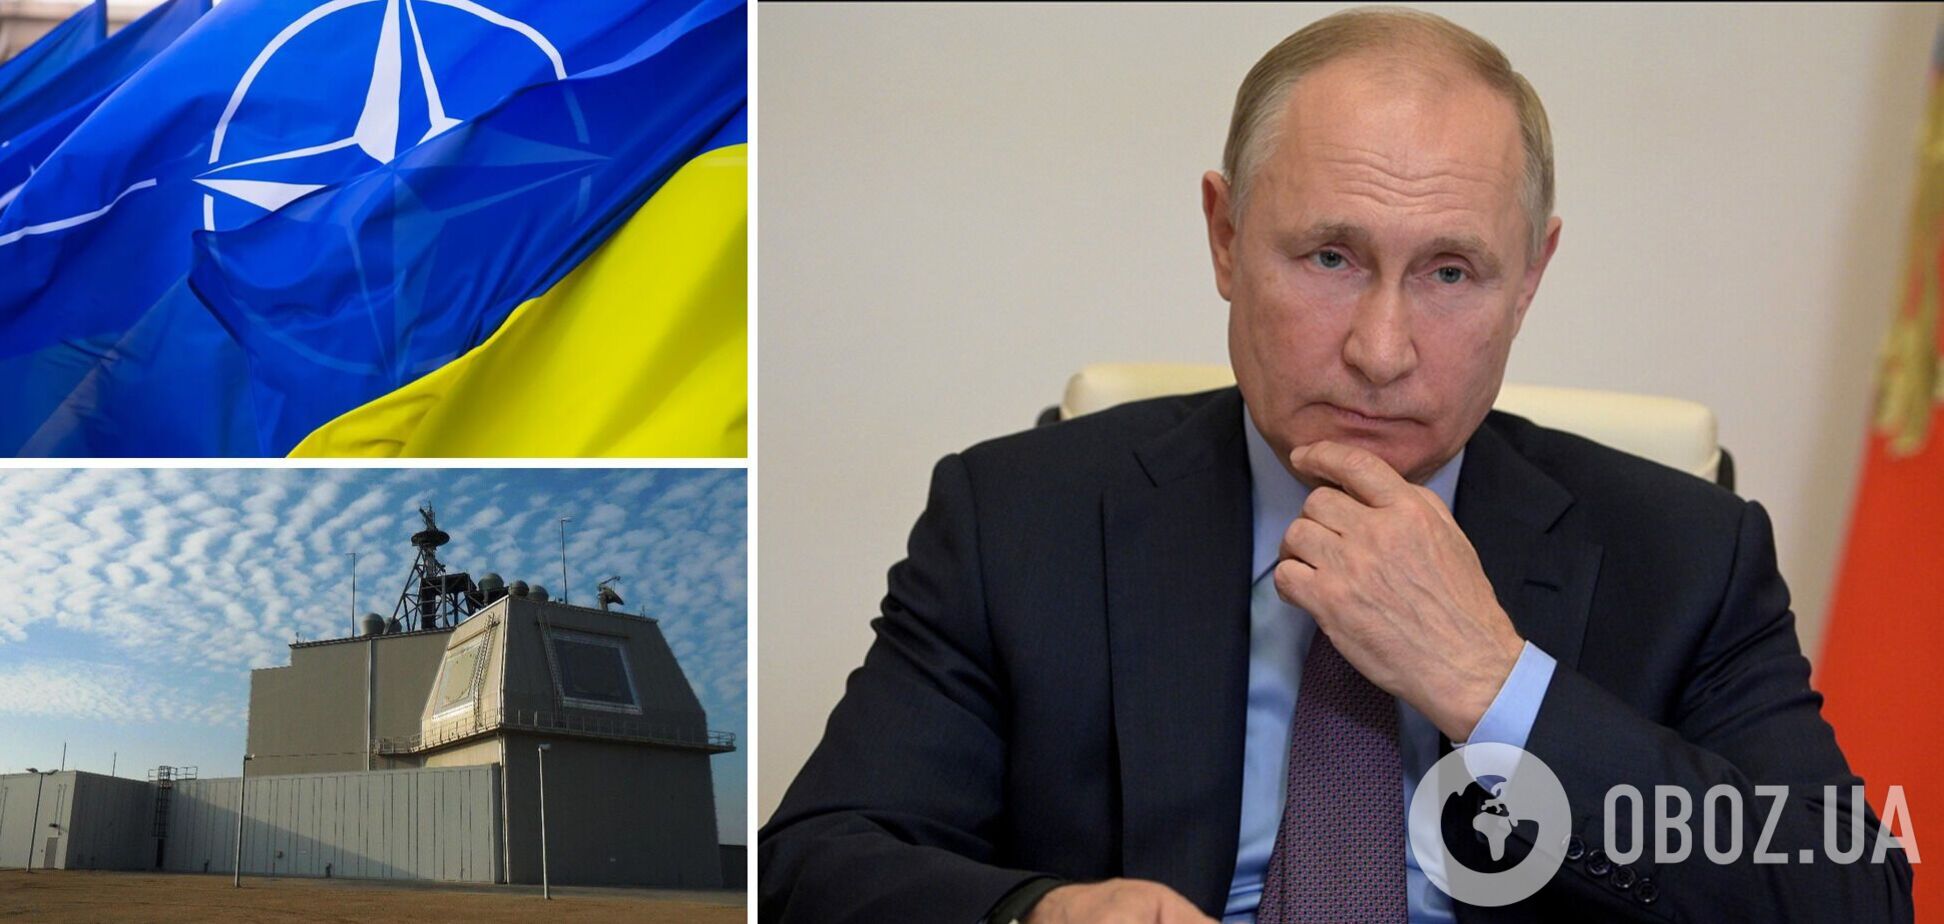 Путин боится НАТО в Украине, заявил Песков